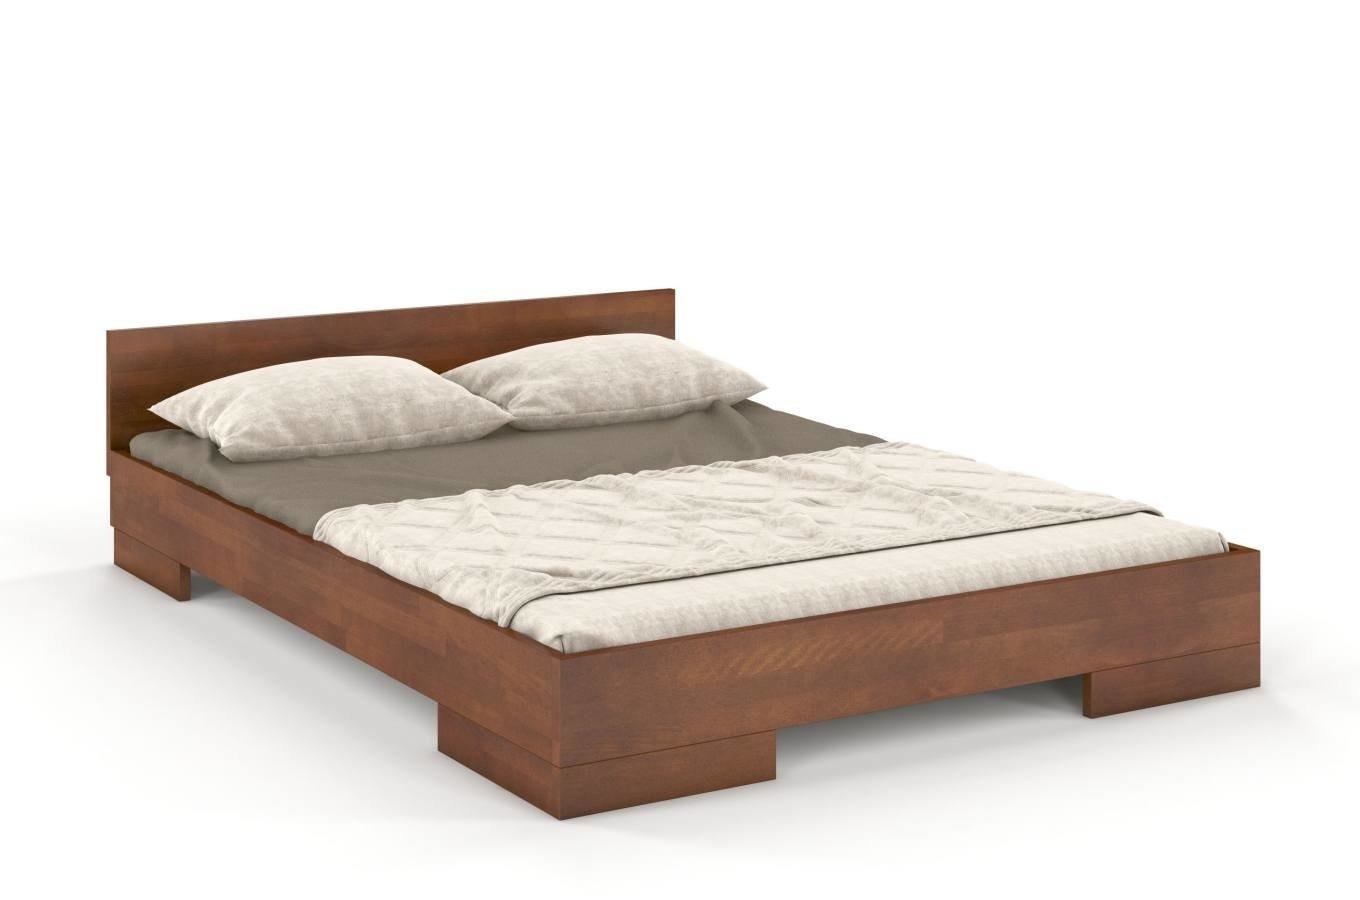 Łóżko drewniane bukowe Skandica SPECTRUM Niskie / 140x200 cm, kolor orzech